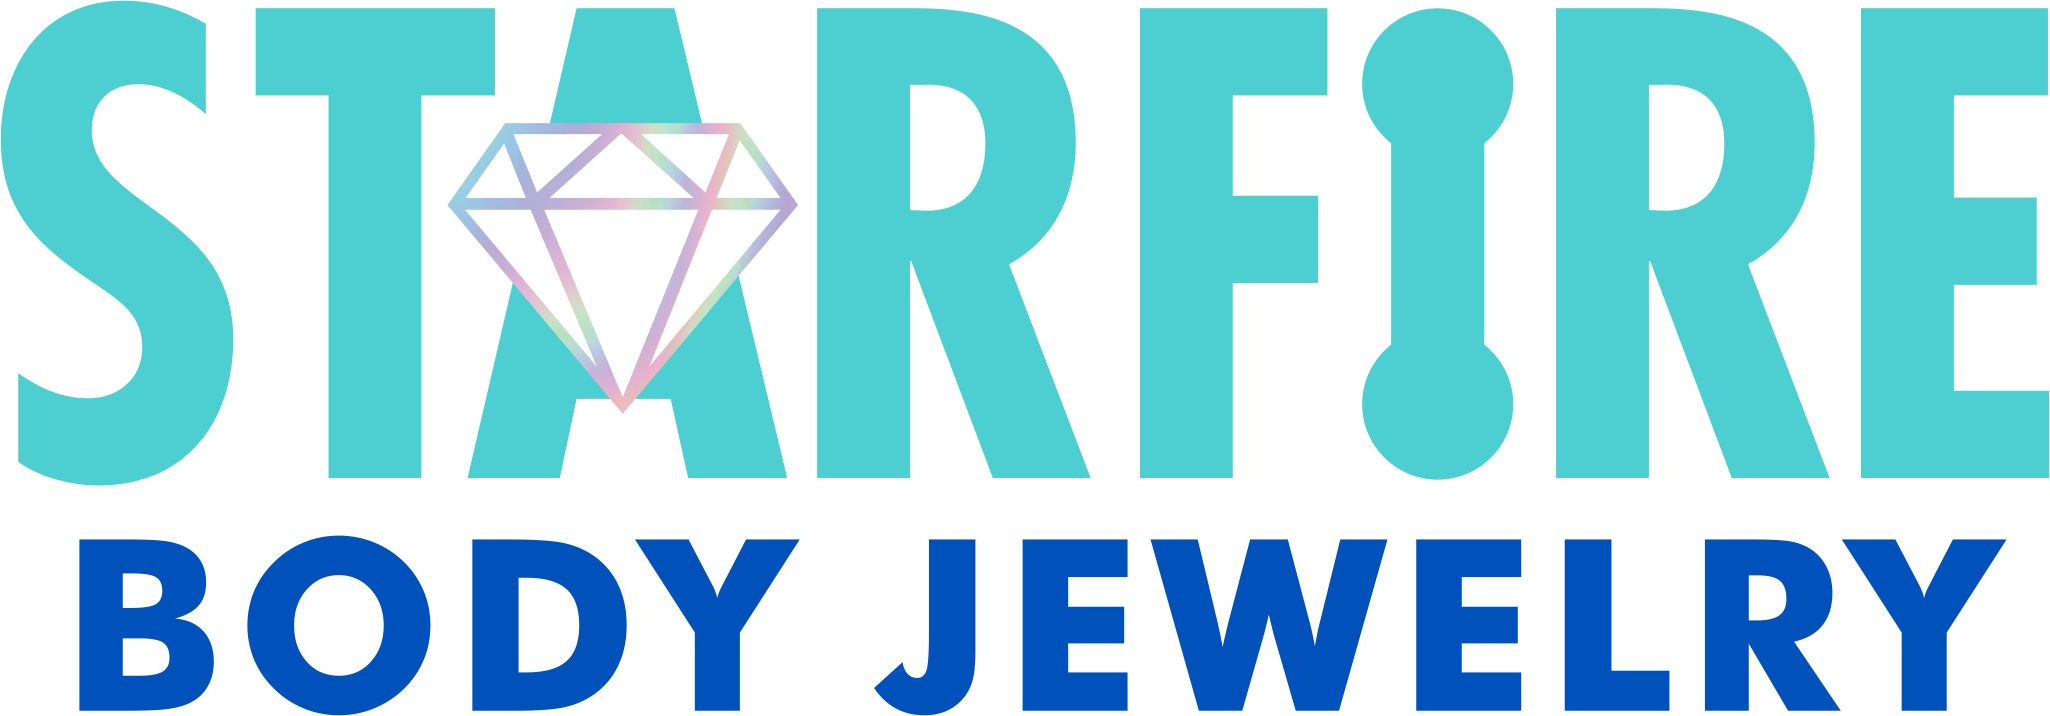 Body Gems – Starfire Body Jewelry Company